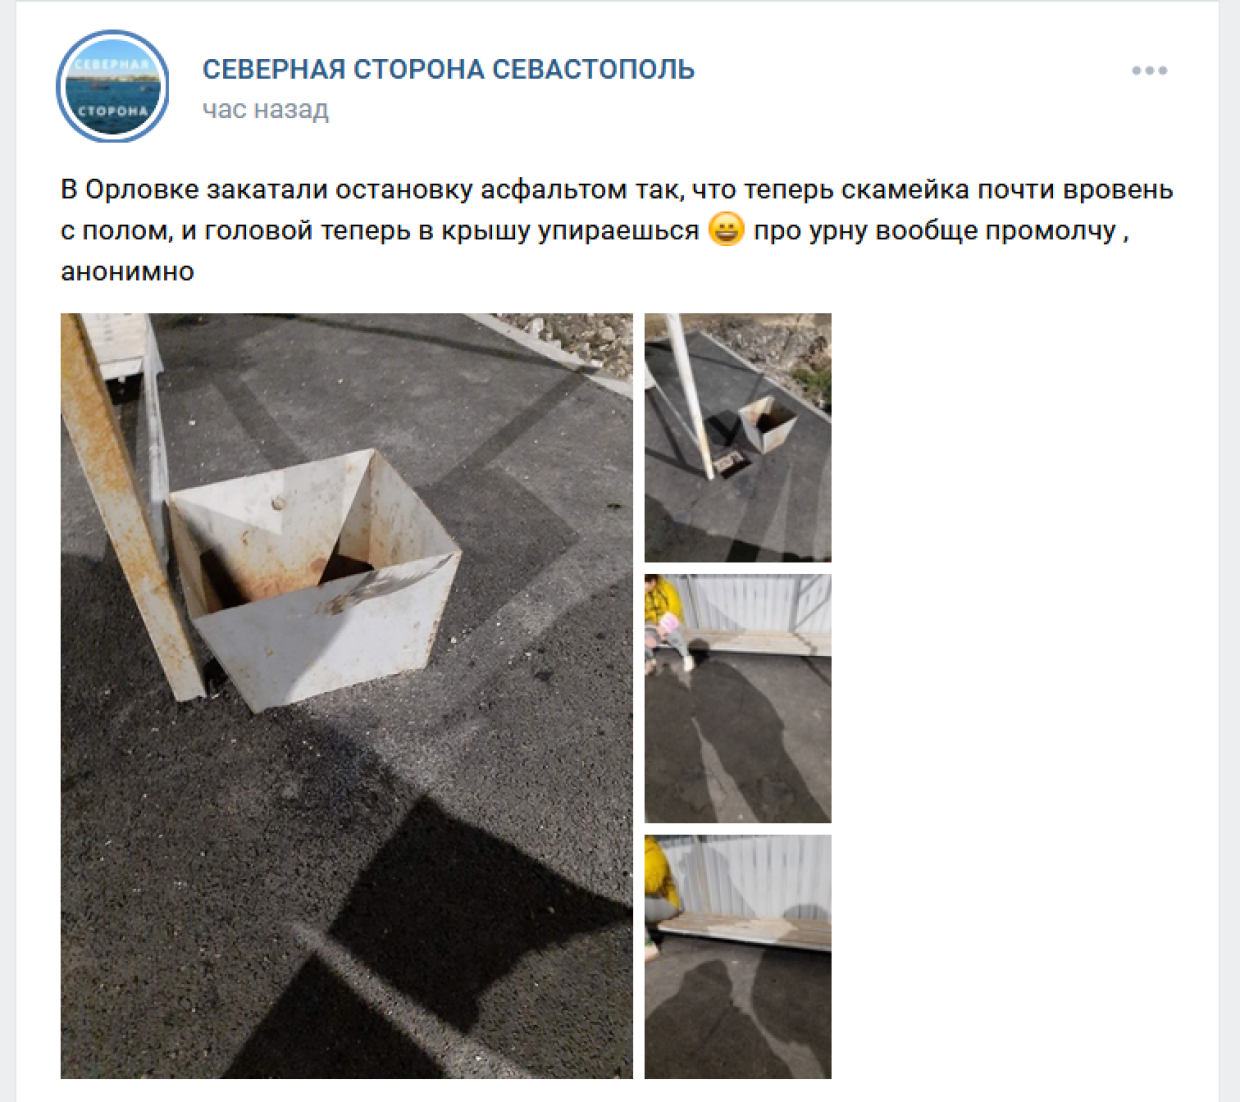 Жители крымского села показали на фото остановку, от которой становится «и смешно, и грустно»